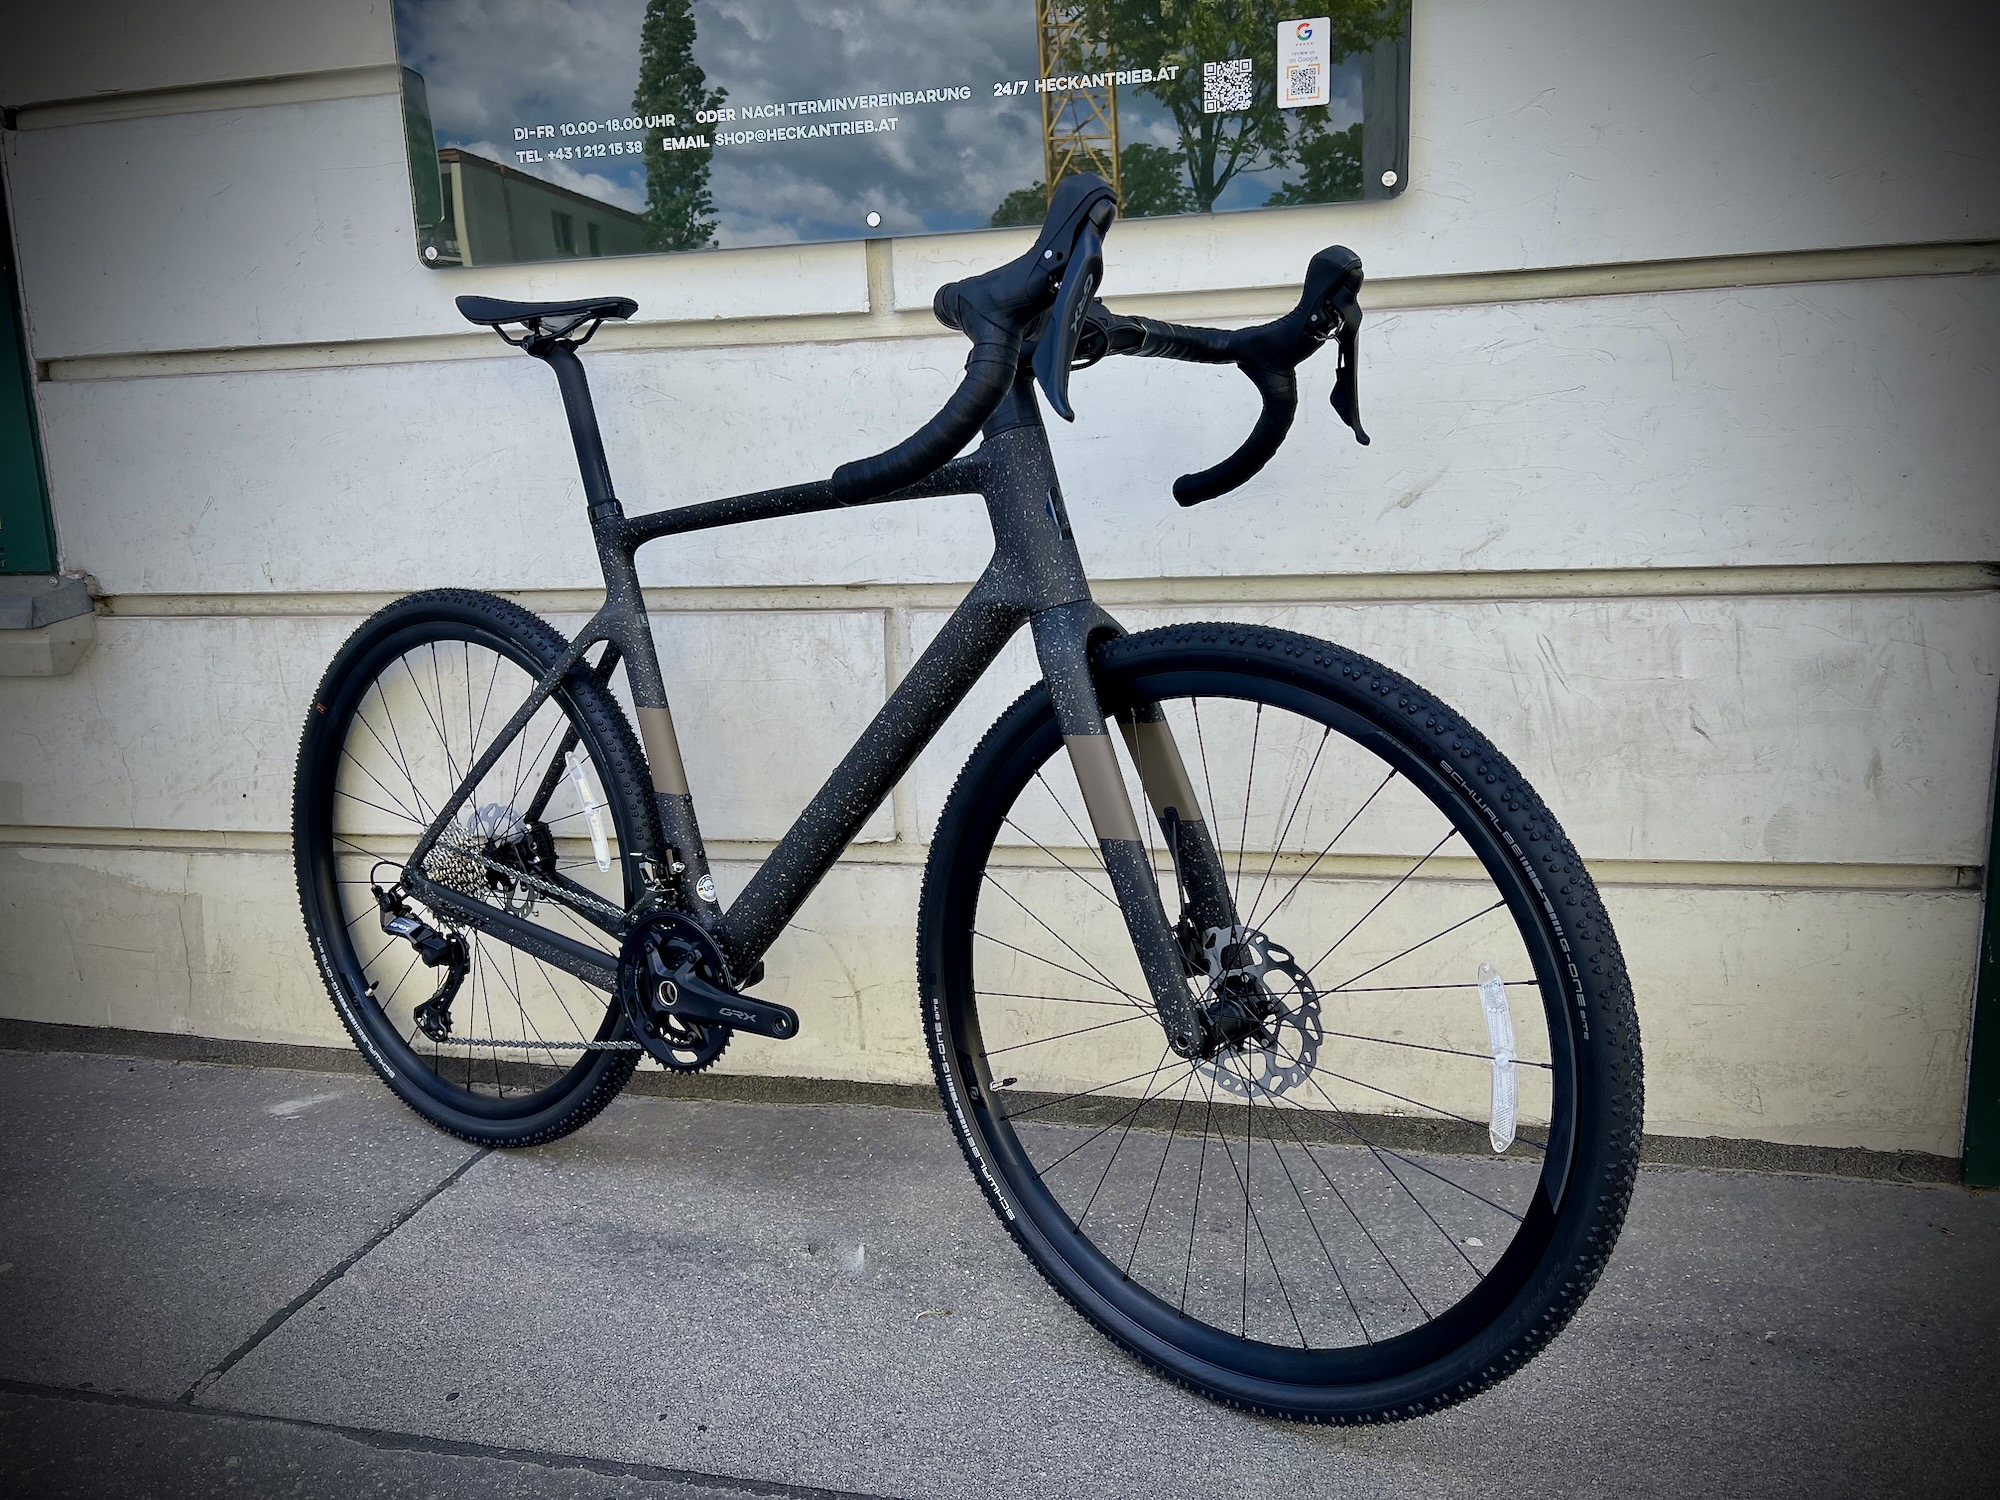 Scott Addict Gravel 40 Carbon Gravel Bike mit Shimano GRX 24 Schaltung